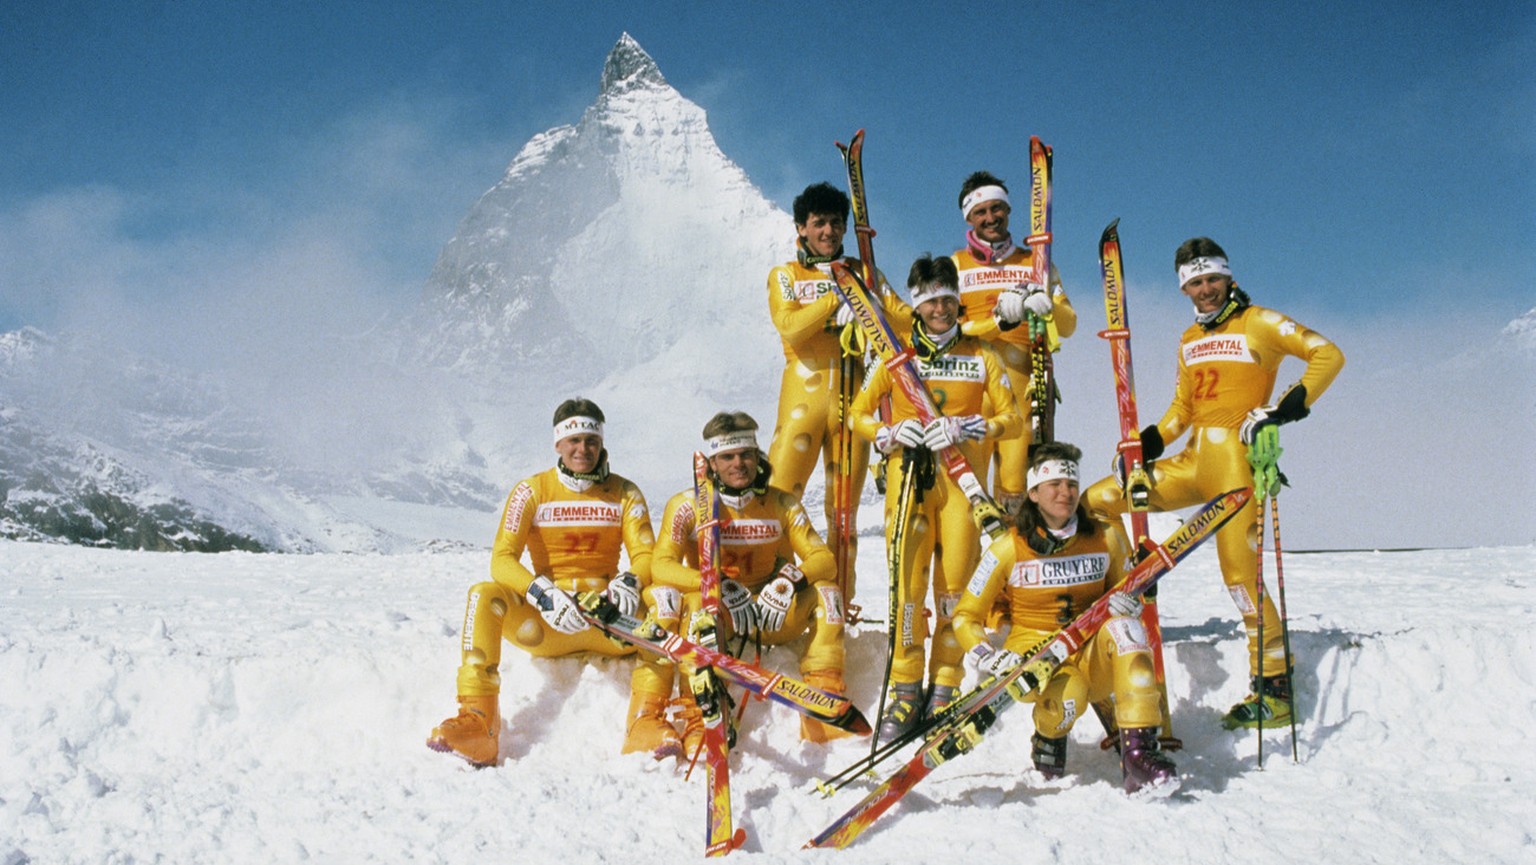 Die Schweizer Alpinskifahrer Urs Lehmann, Franco Cavegn, Patrick Staub, Gaby Zingre, Marco Hangl, Corinne Rey-Bellet und Heinrich Rupp, von links nach rechts, posieren im Jahr 1994 vor dem Matterhorn  ...